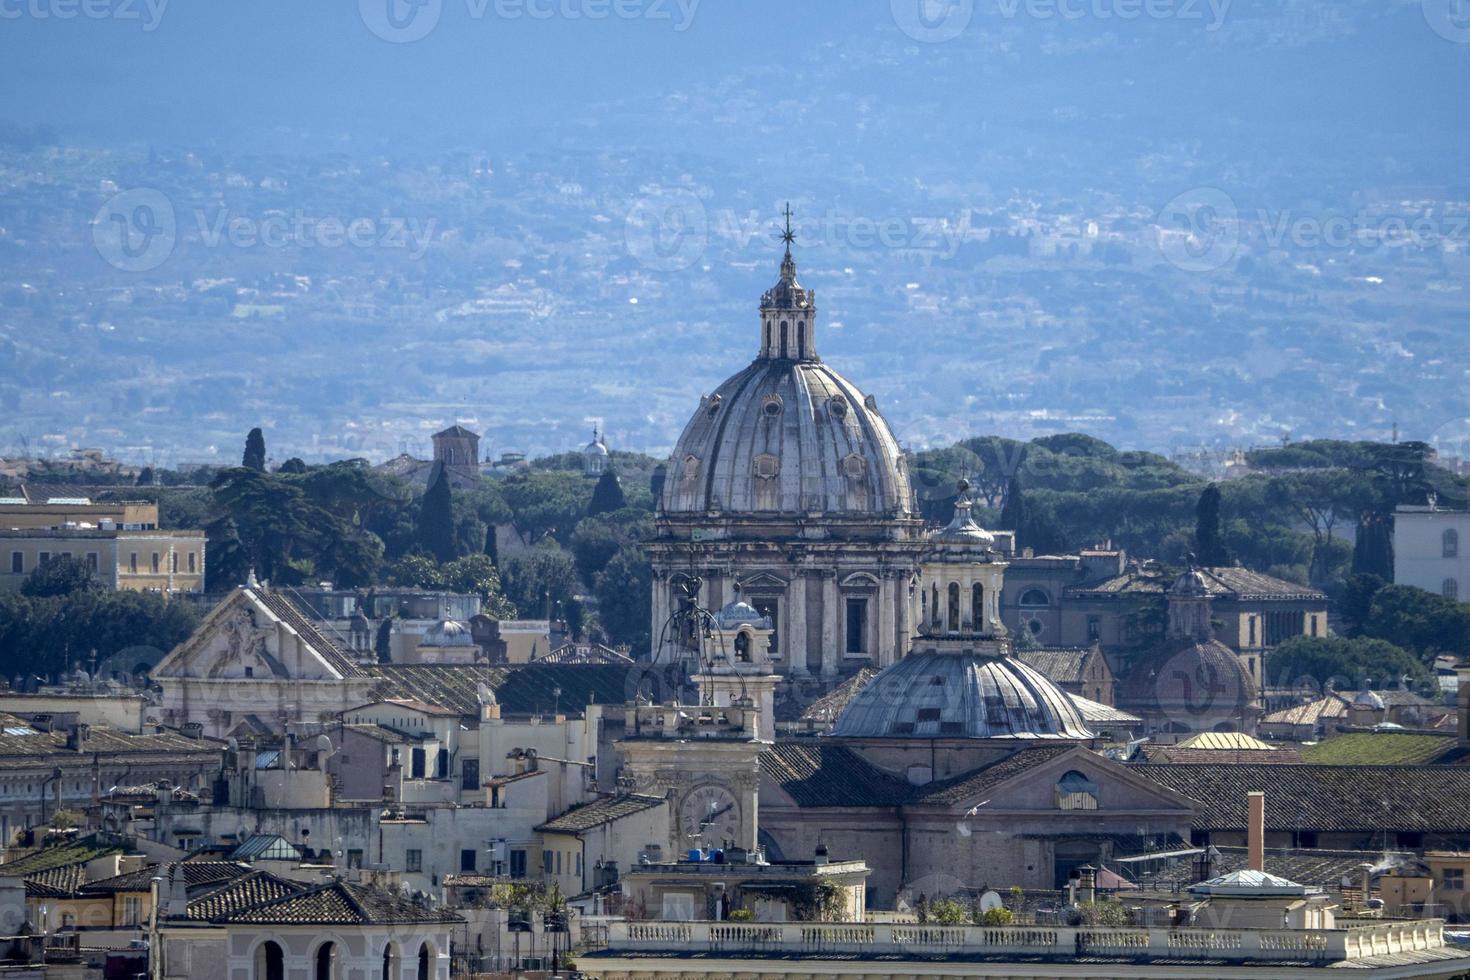 roma vue aérienne paysage urbain du musée du vatican photo